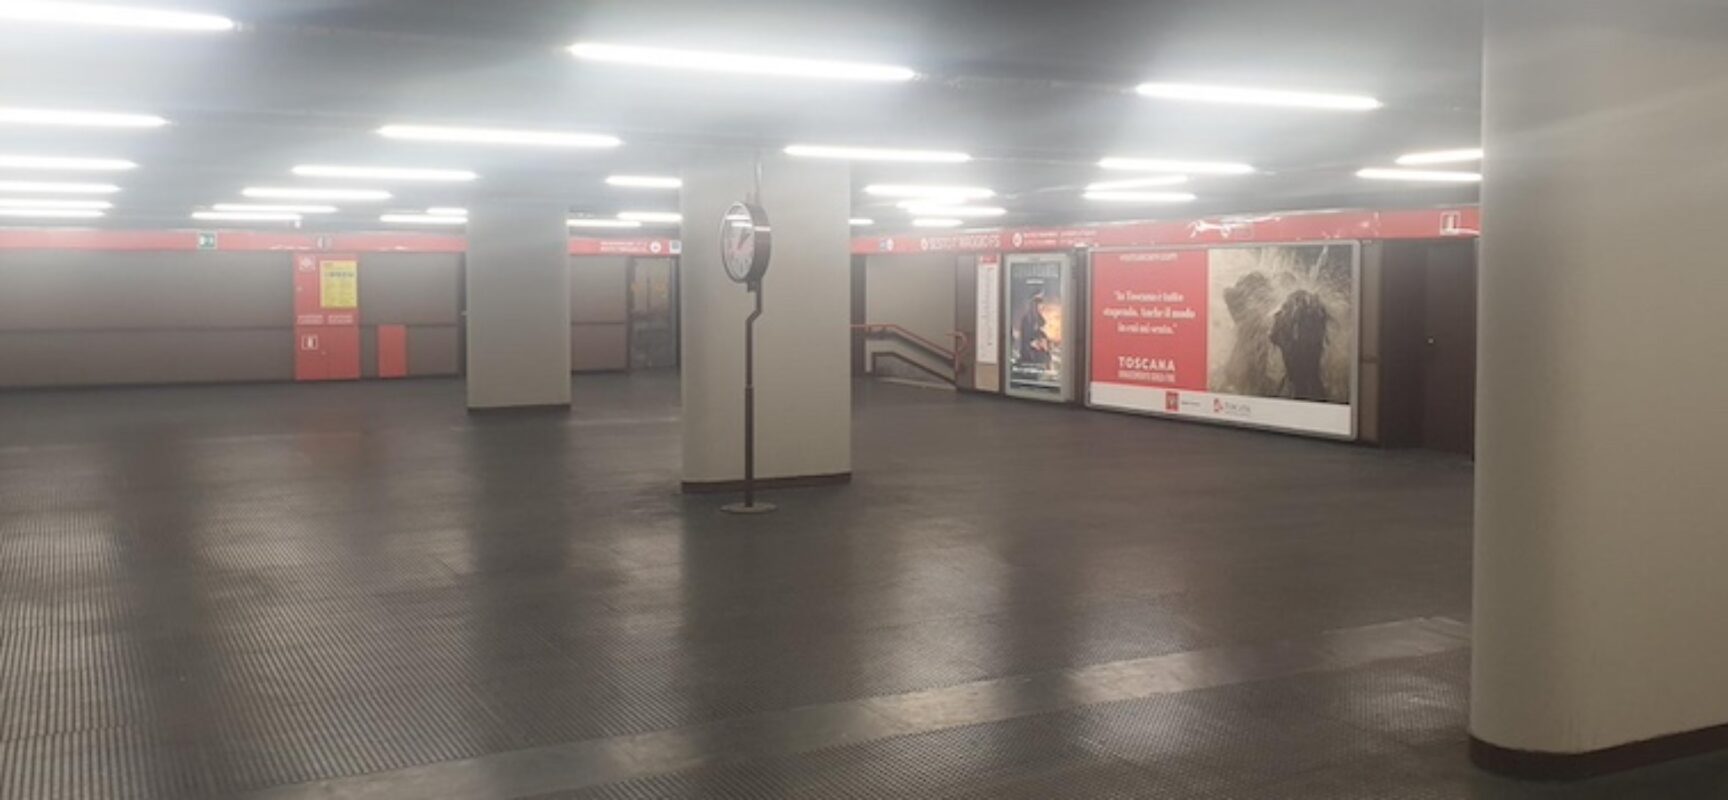 Metro Bisceglie a Milano, la proposta: “Chiediamo di abbellirla con immagini della città”